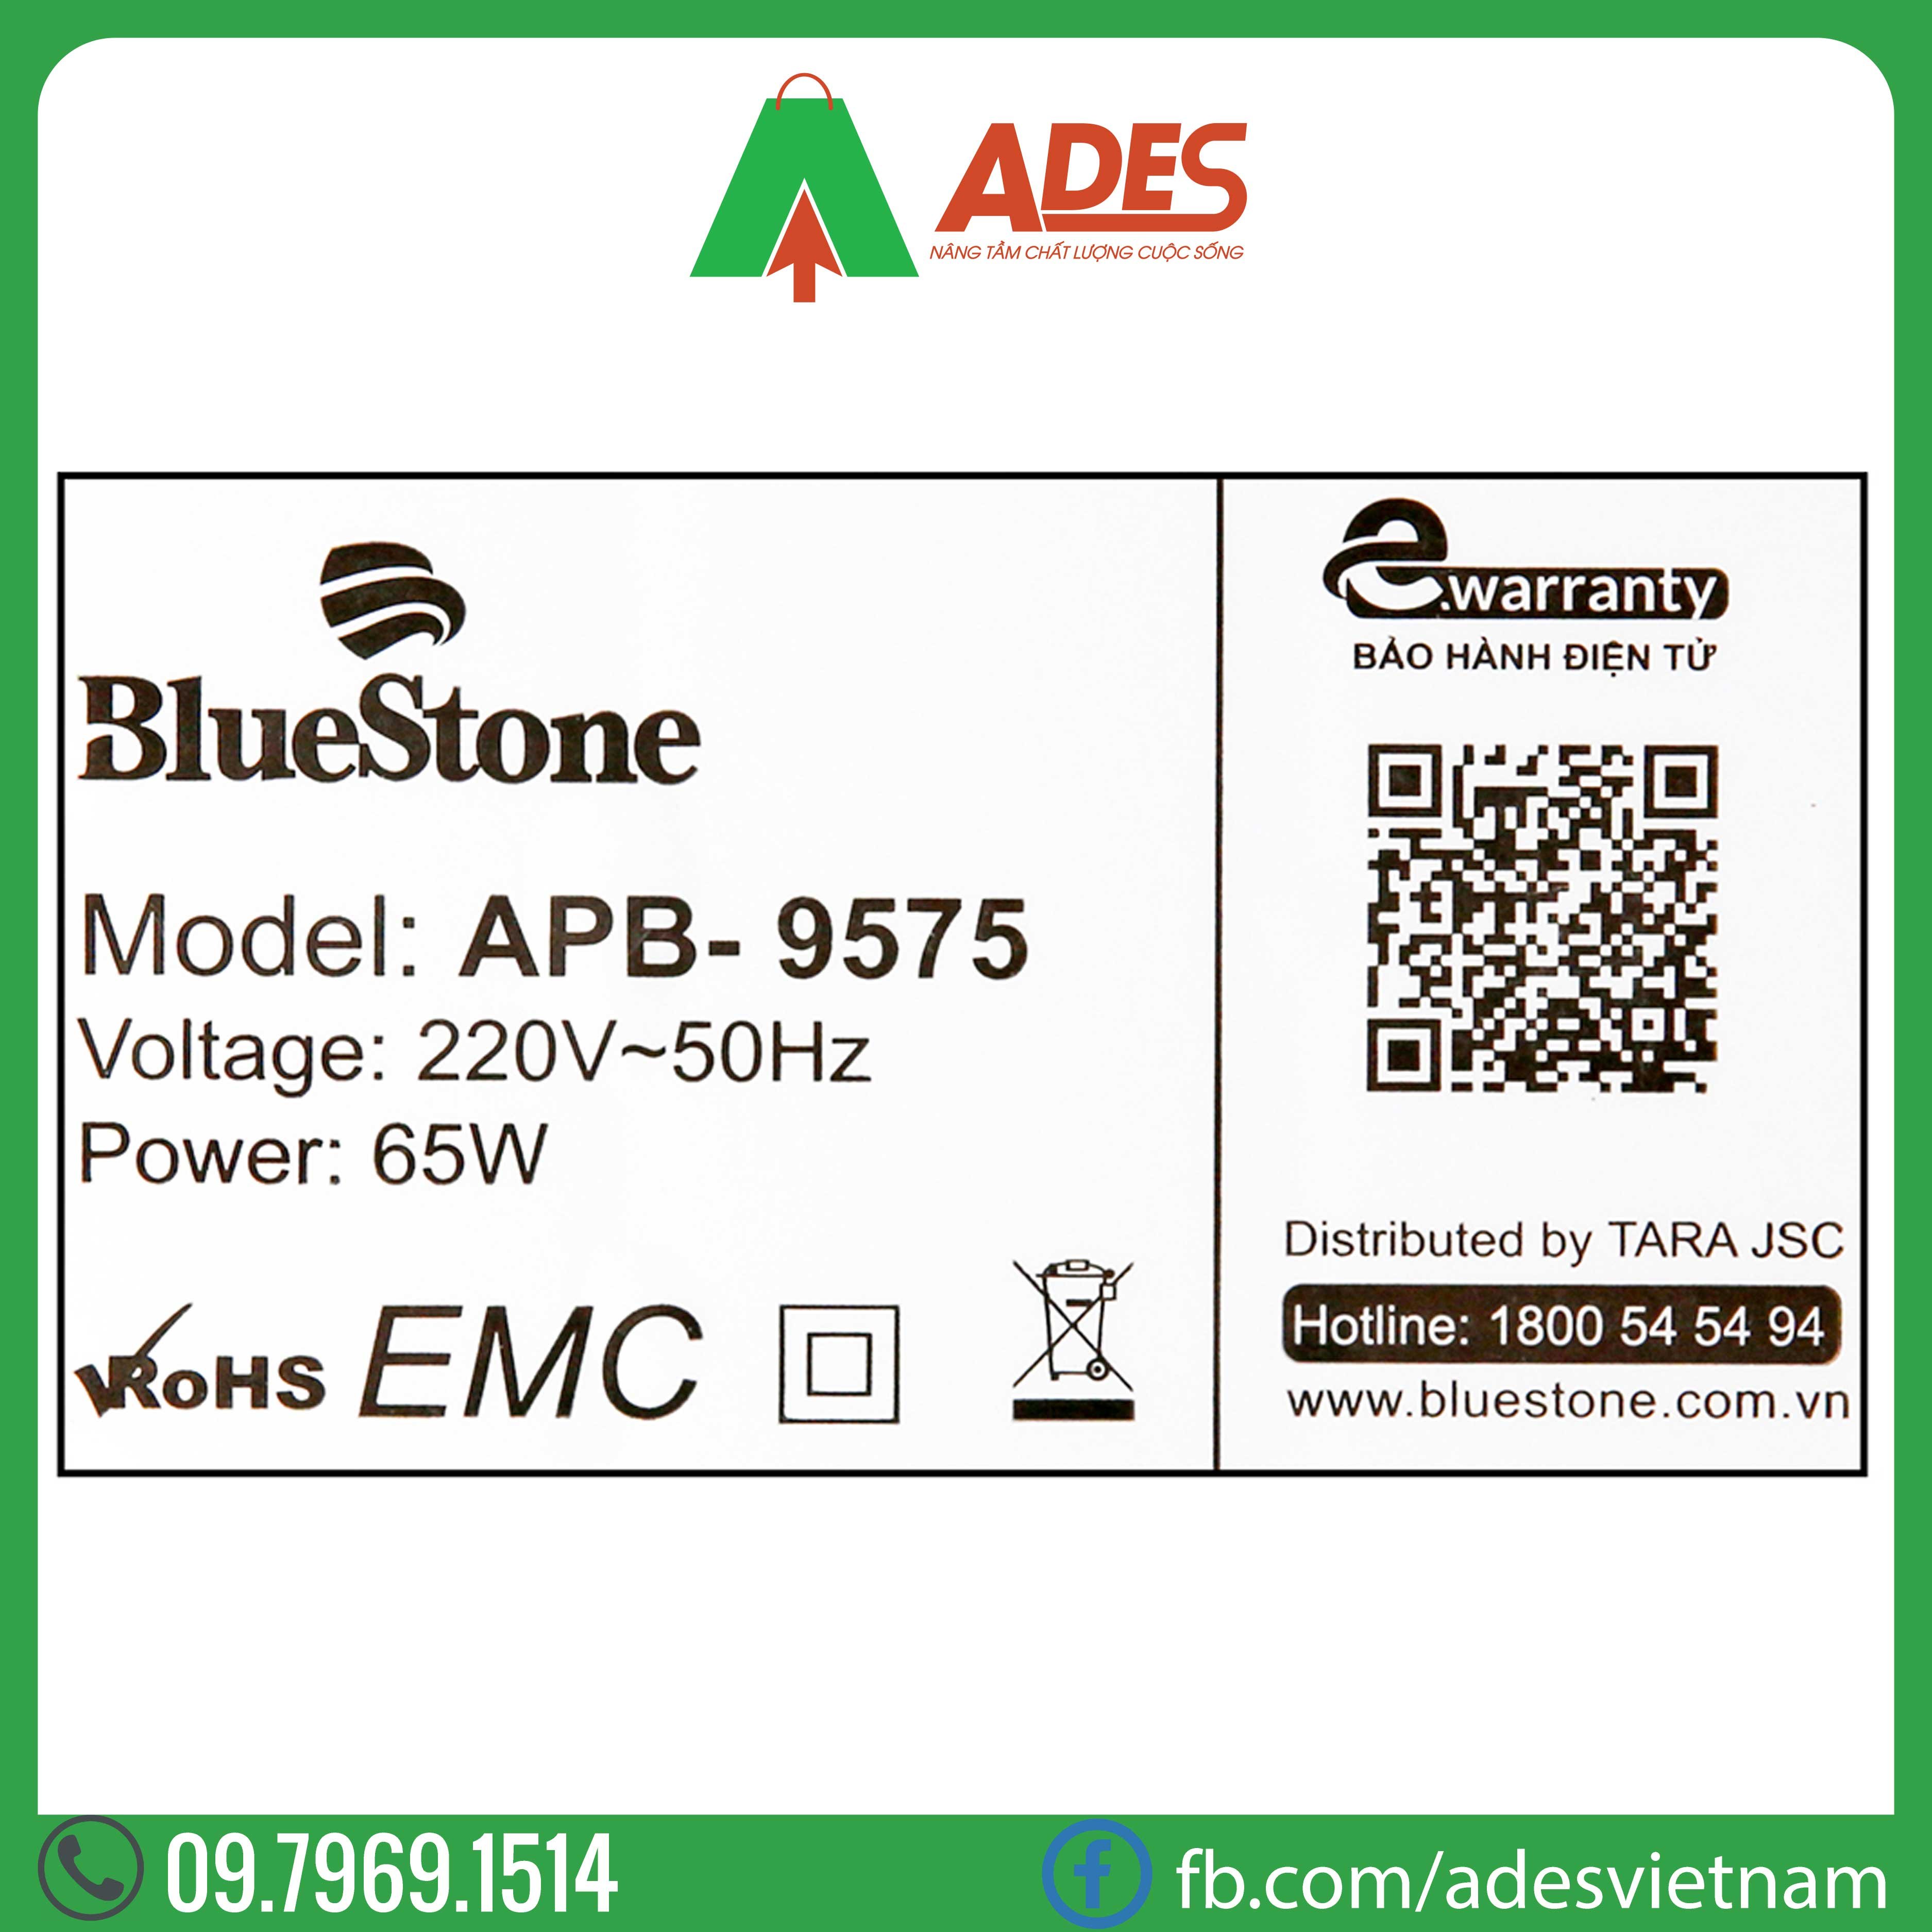 may loc khong khi Bluestone APB-9575